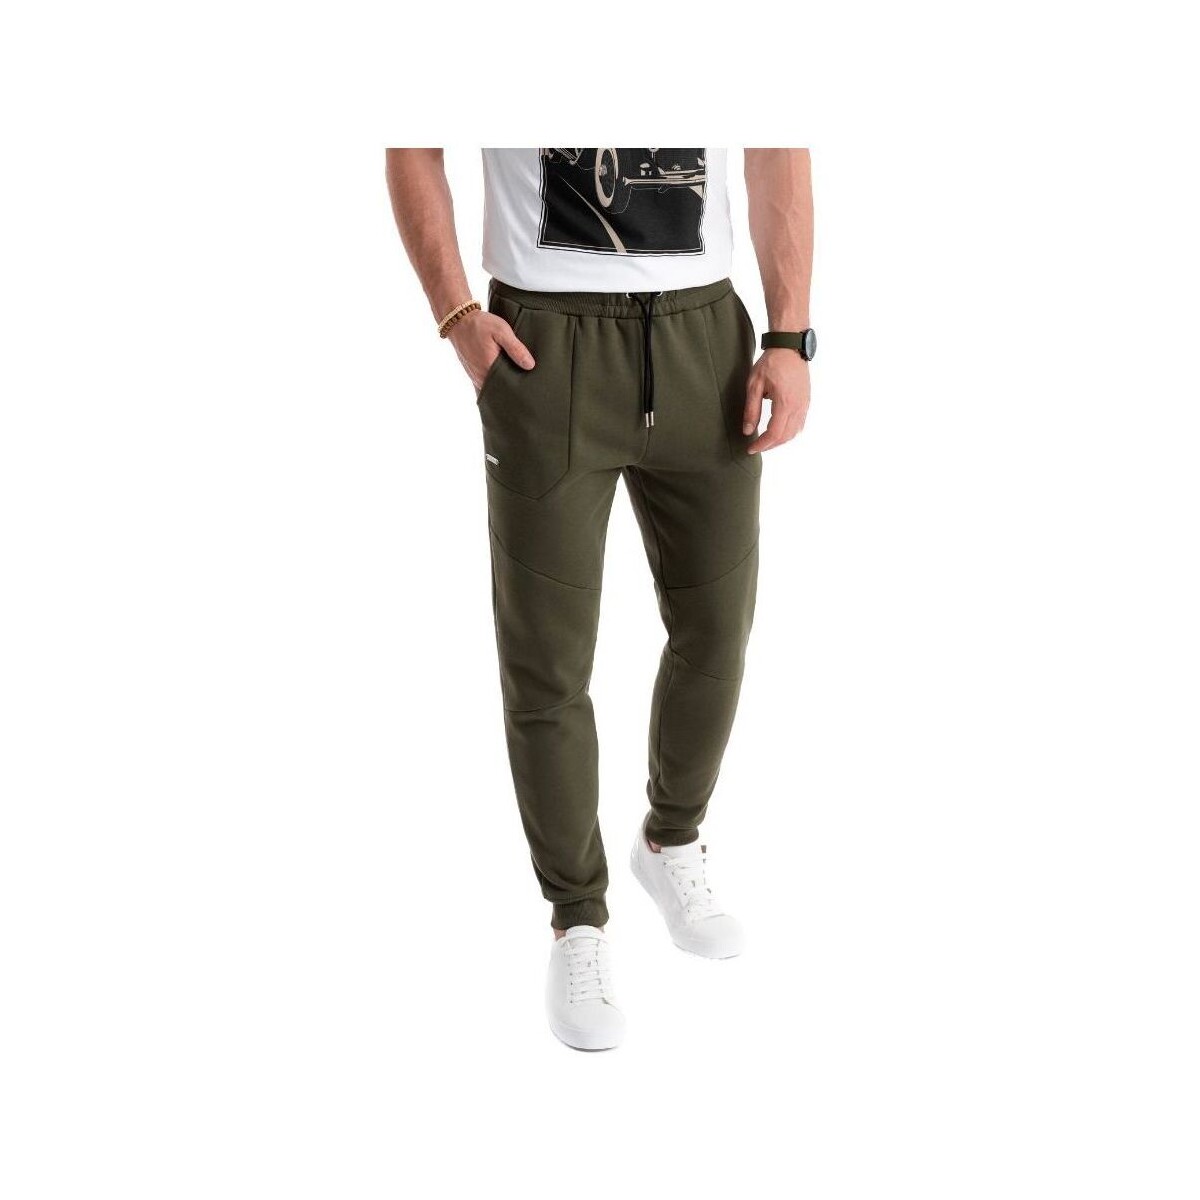 Textil Muži Teplákové kalhoty Ombre Pánské kalhoty joggers Bitine olivová Zelená